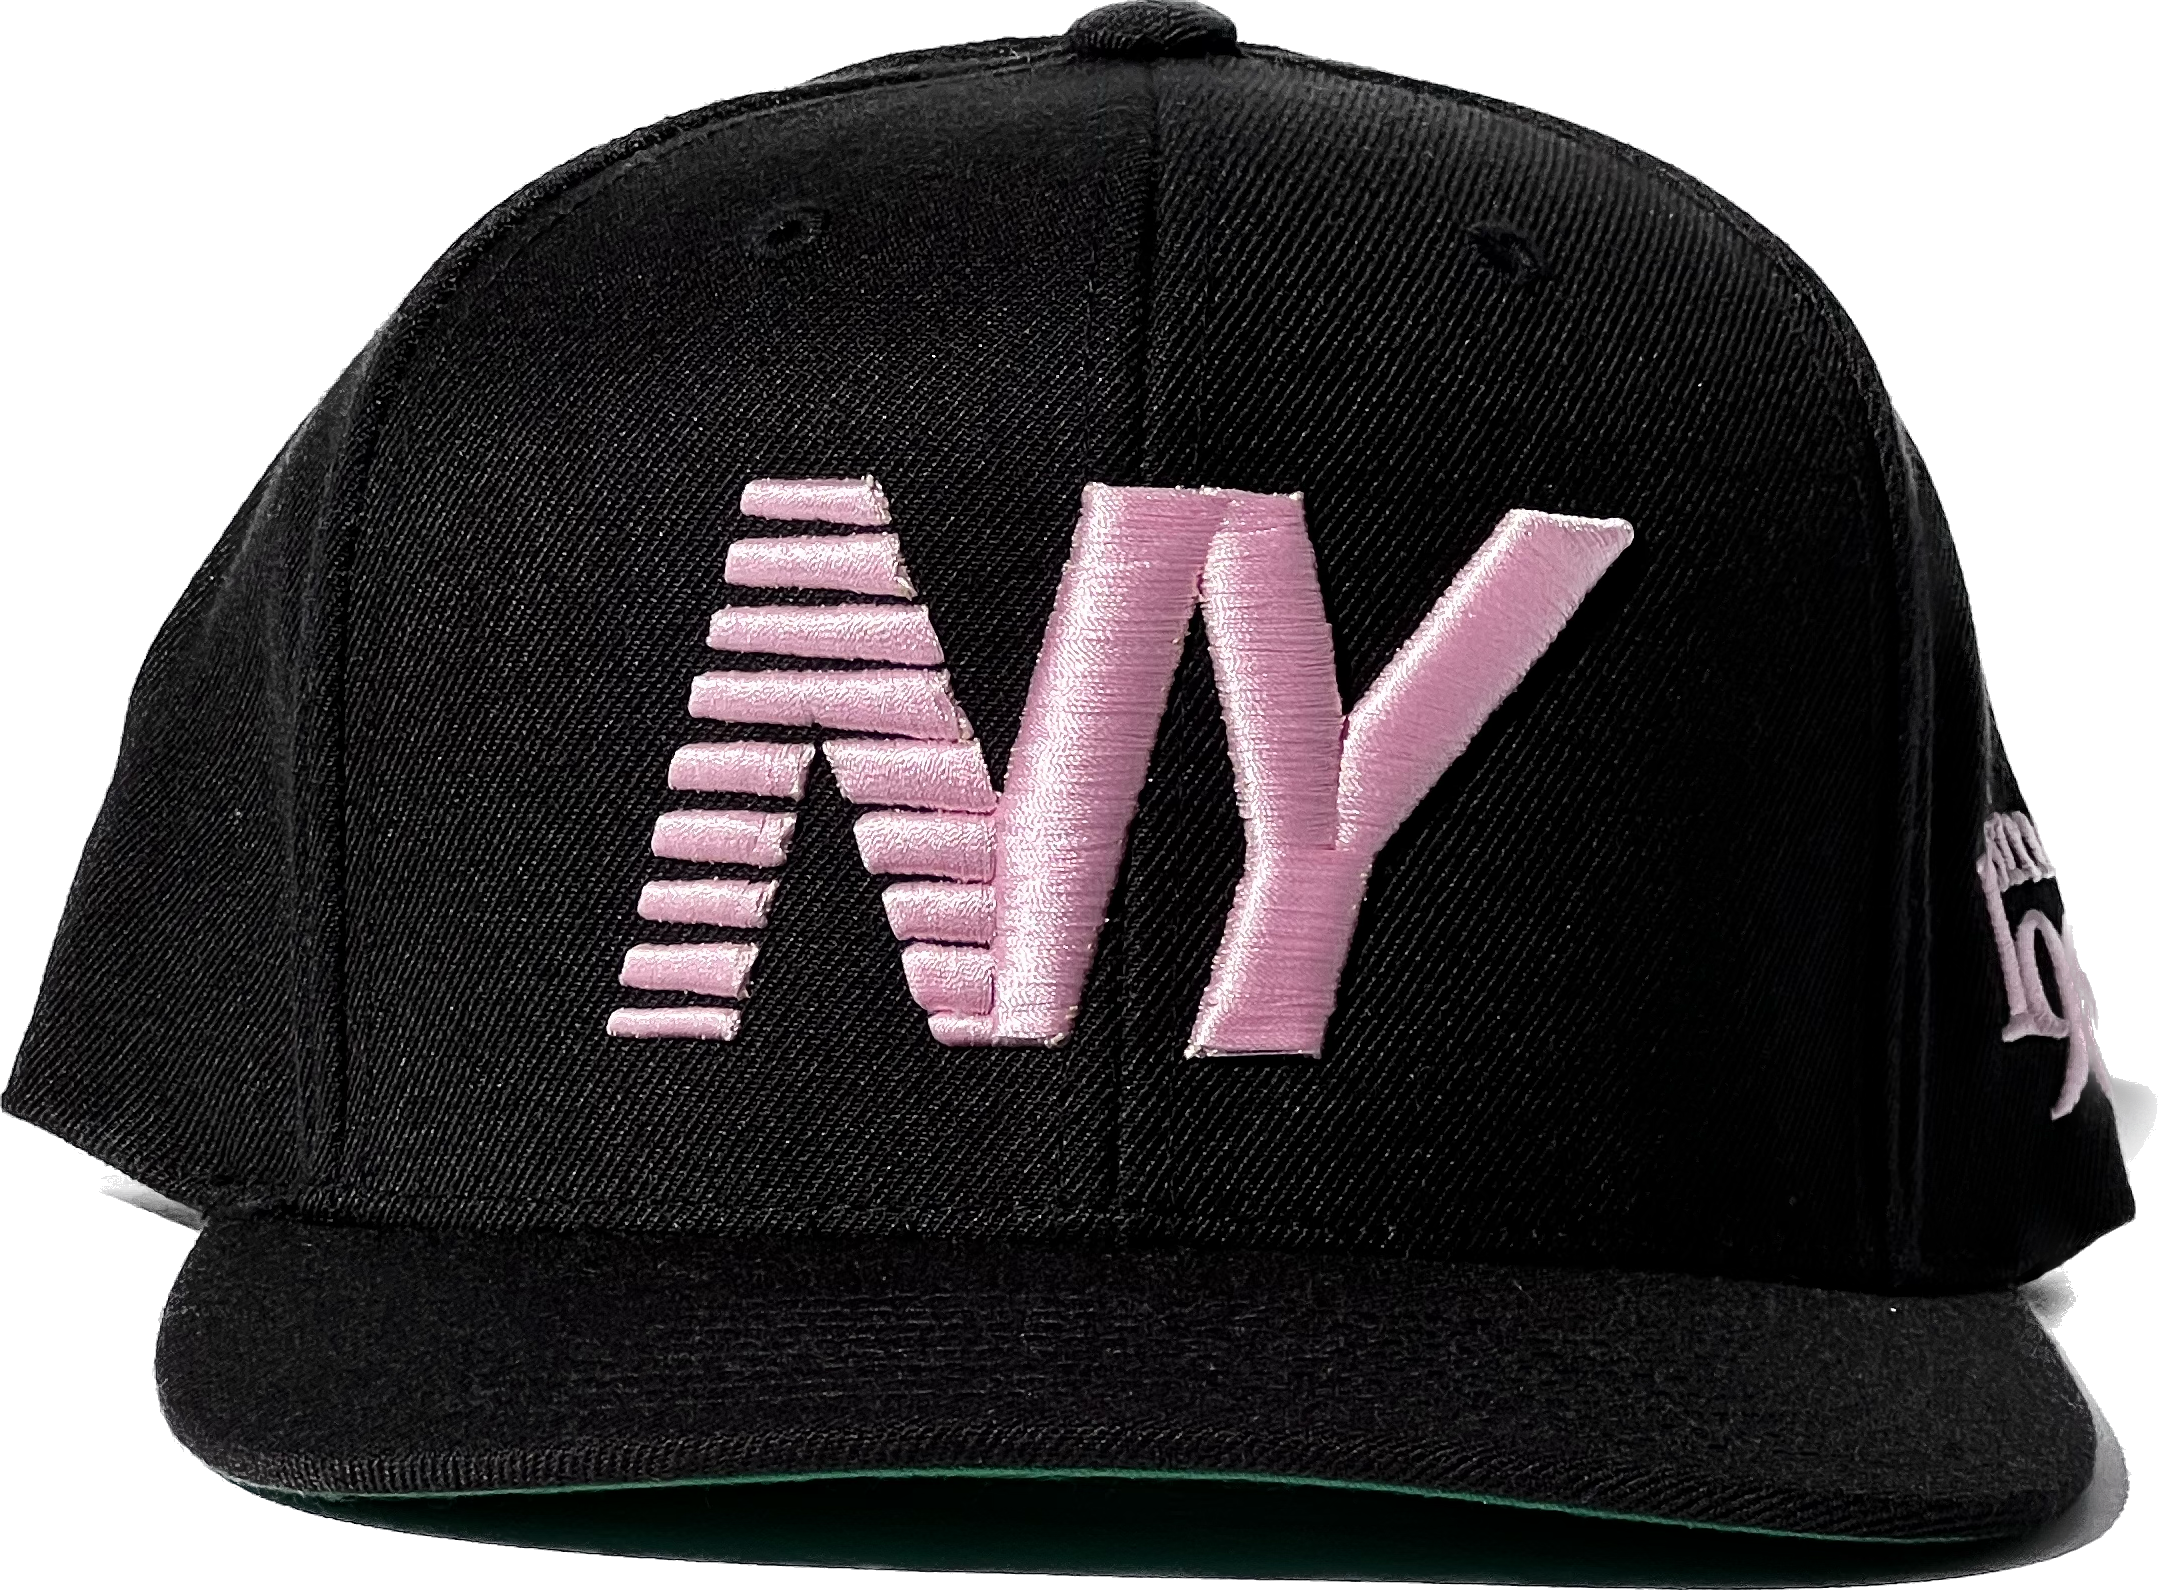 Black x Pink NY Balance Snapback